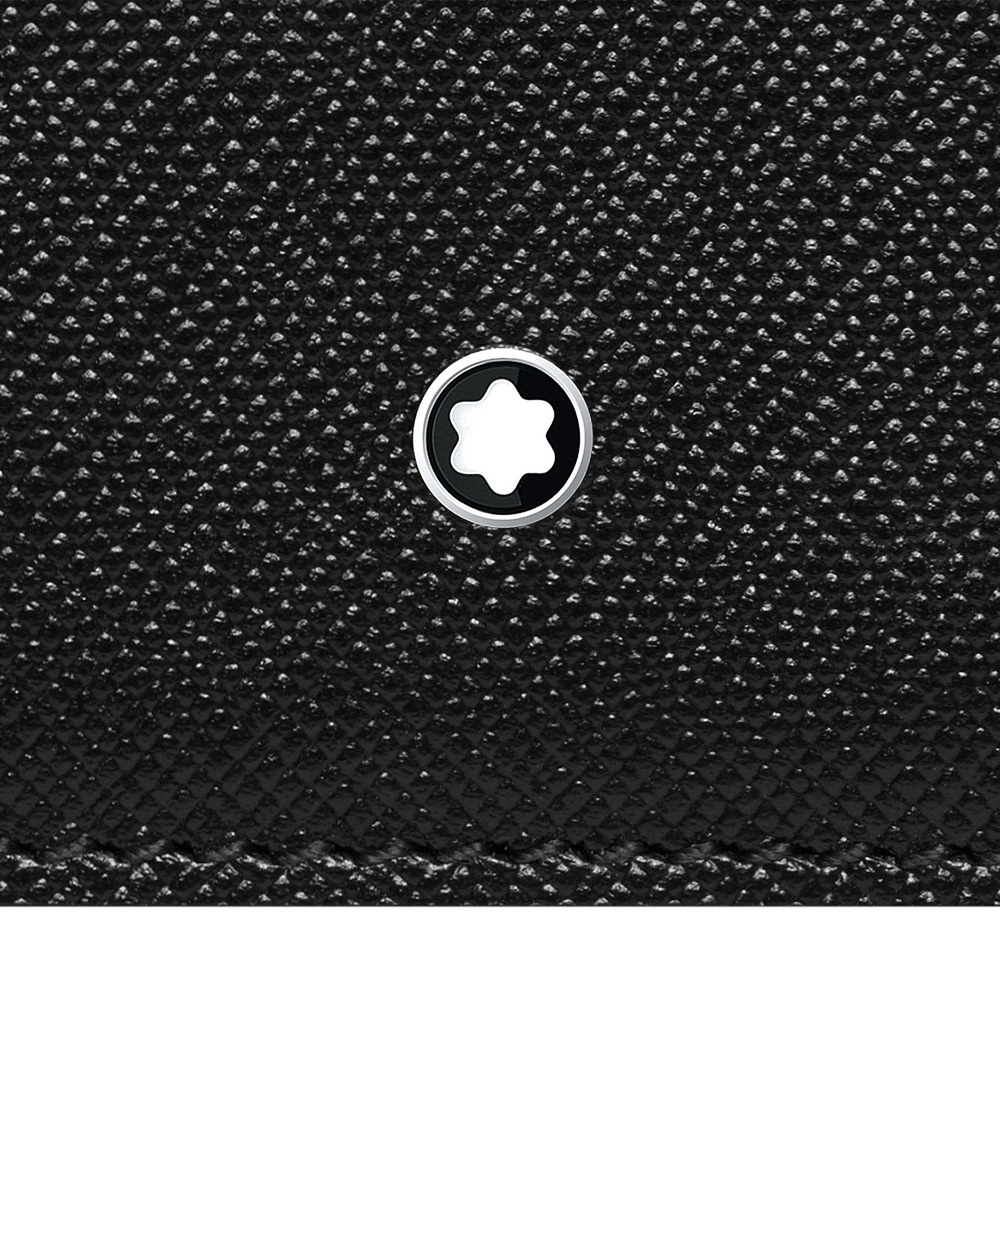 Бумажник Montblanc Sartorial  Montblanc 116340, черный цвет • Купить в интернет-магазине Kameron